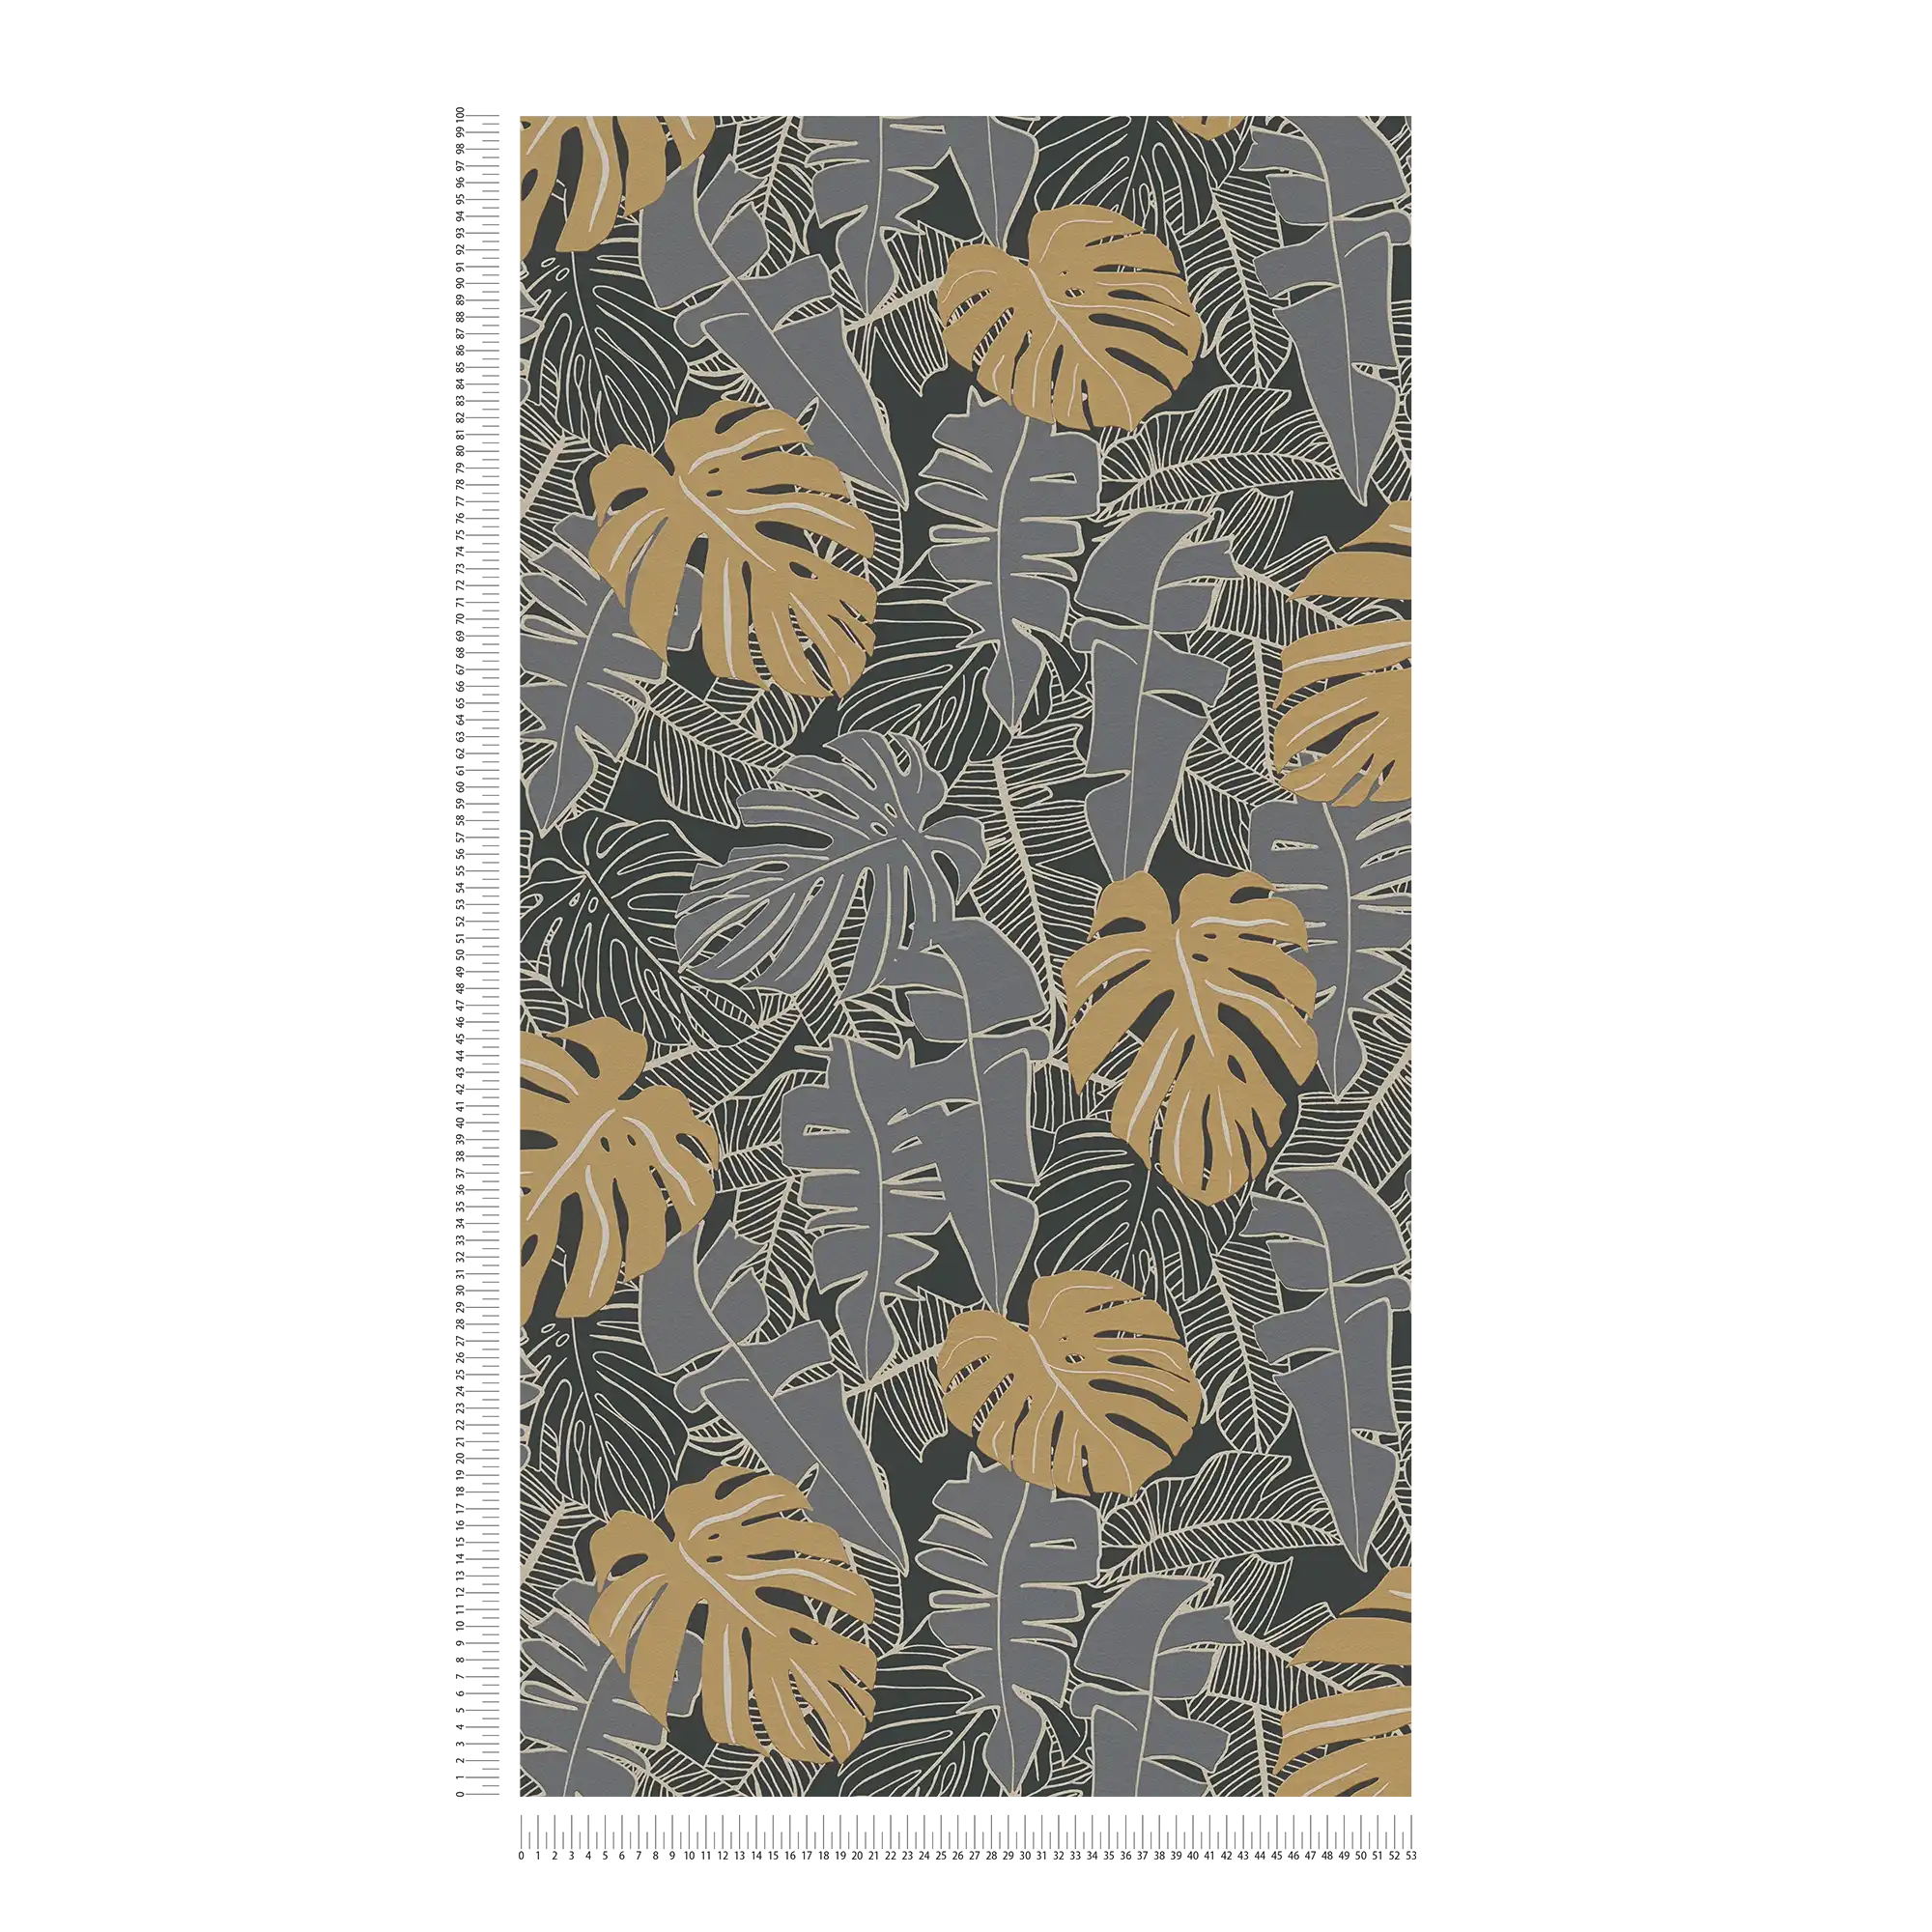             Papier peint jungle avec feuilles de bananier & aspect métallique - noir, or, gris
        